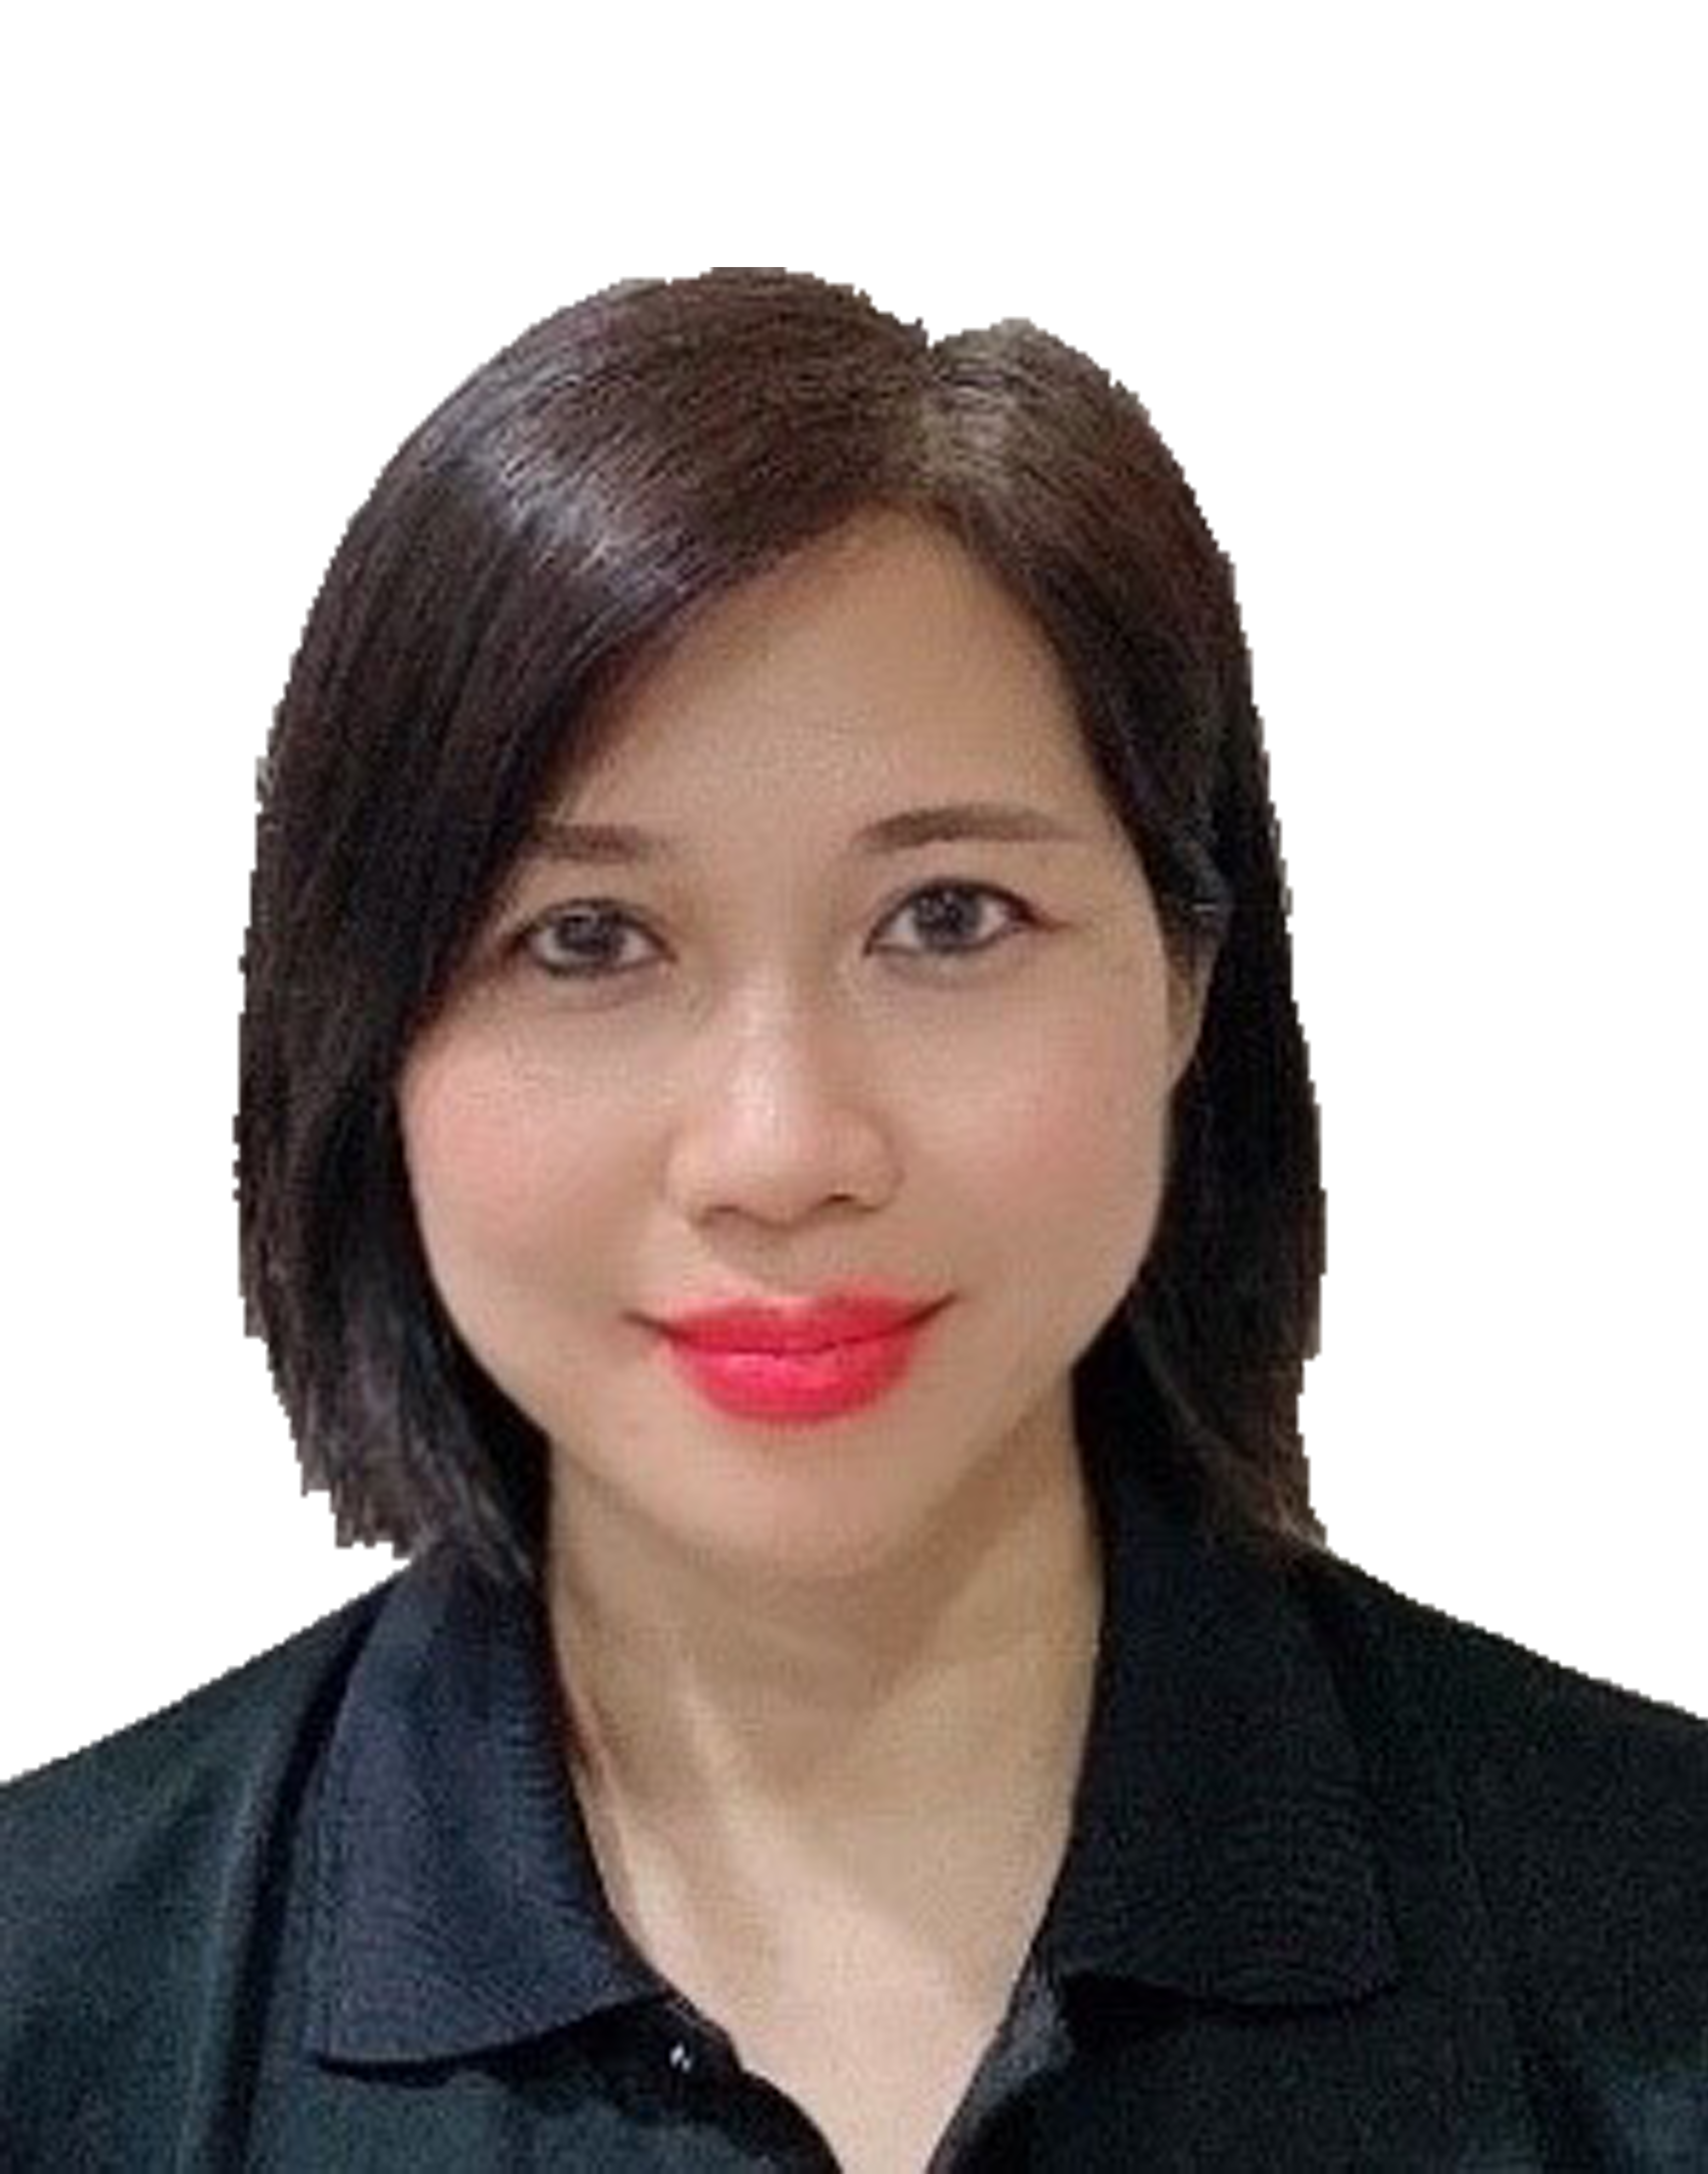 Ms. Karen Hau